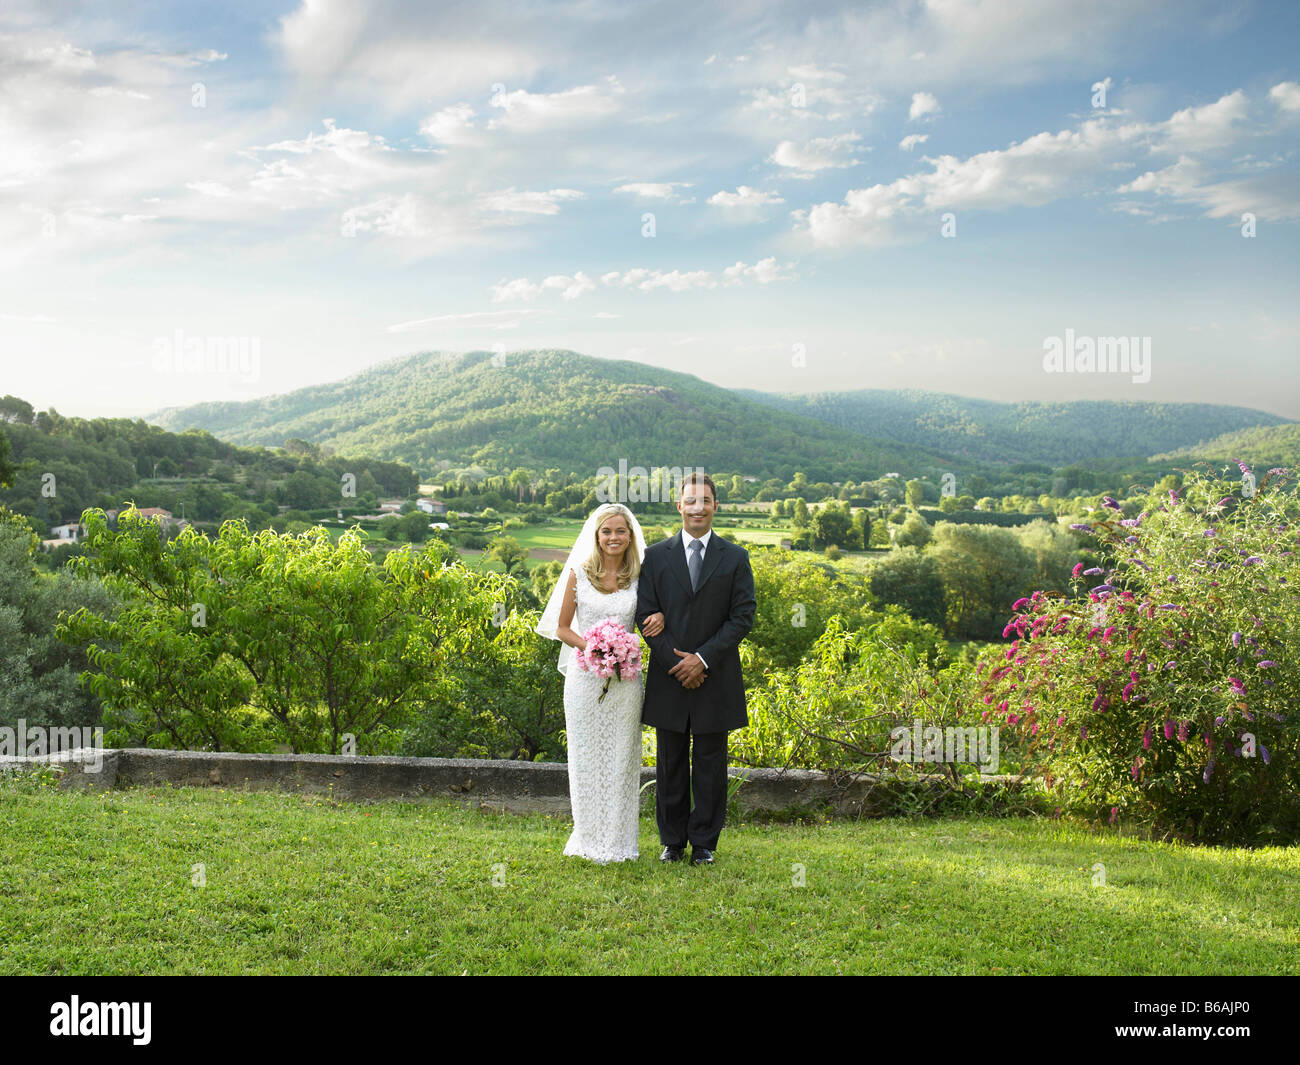 Wedding couple in sunlit garden Stock Photo